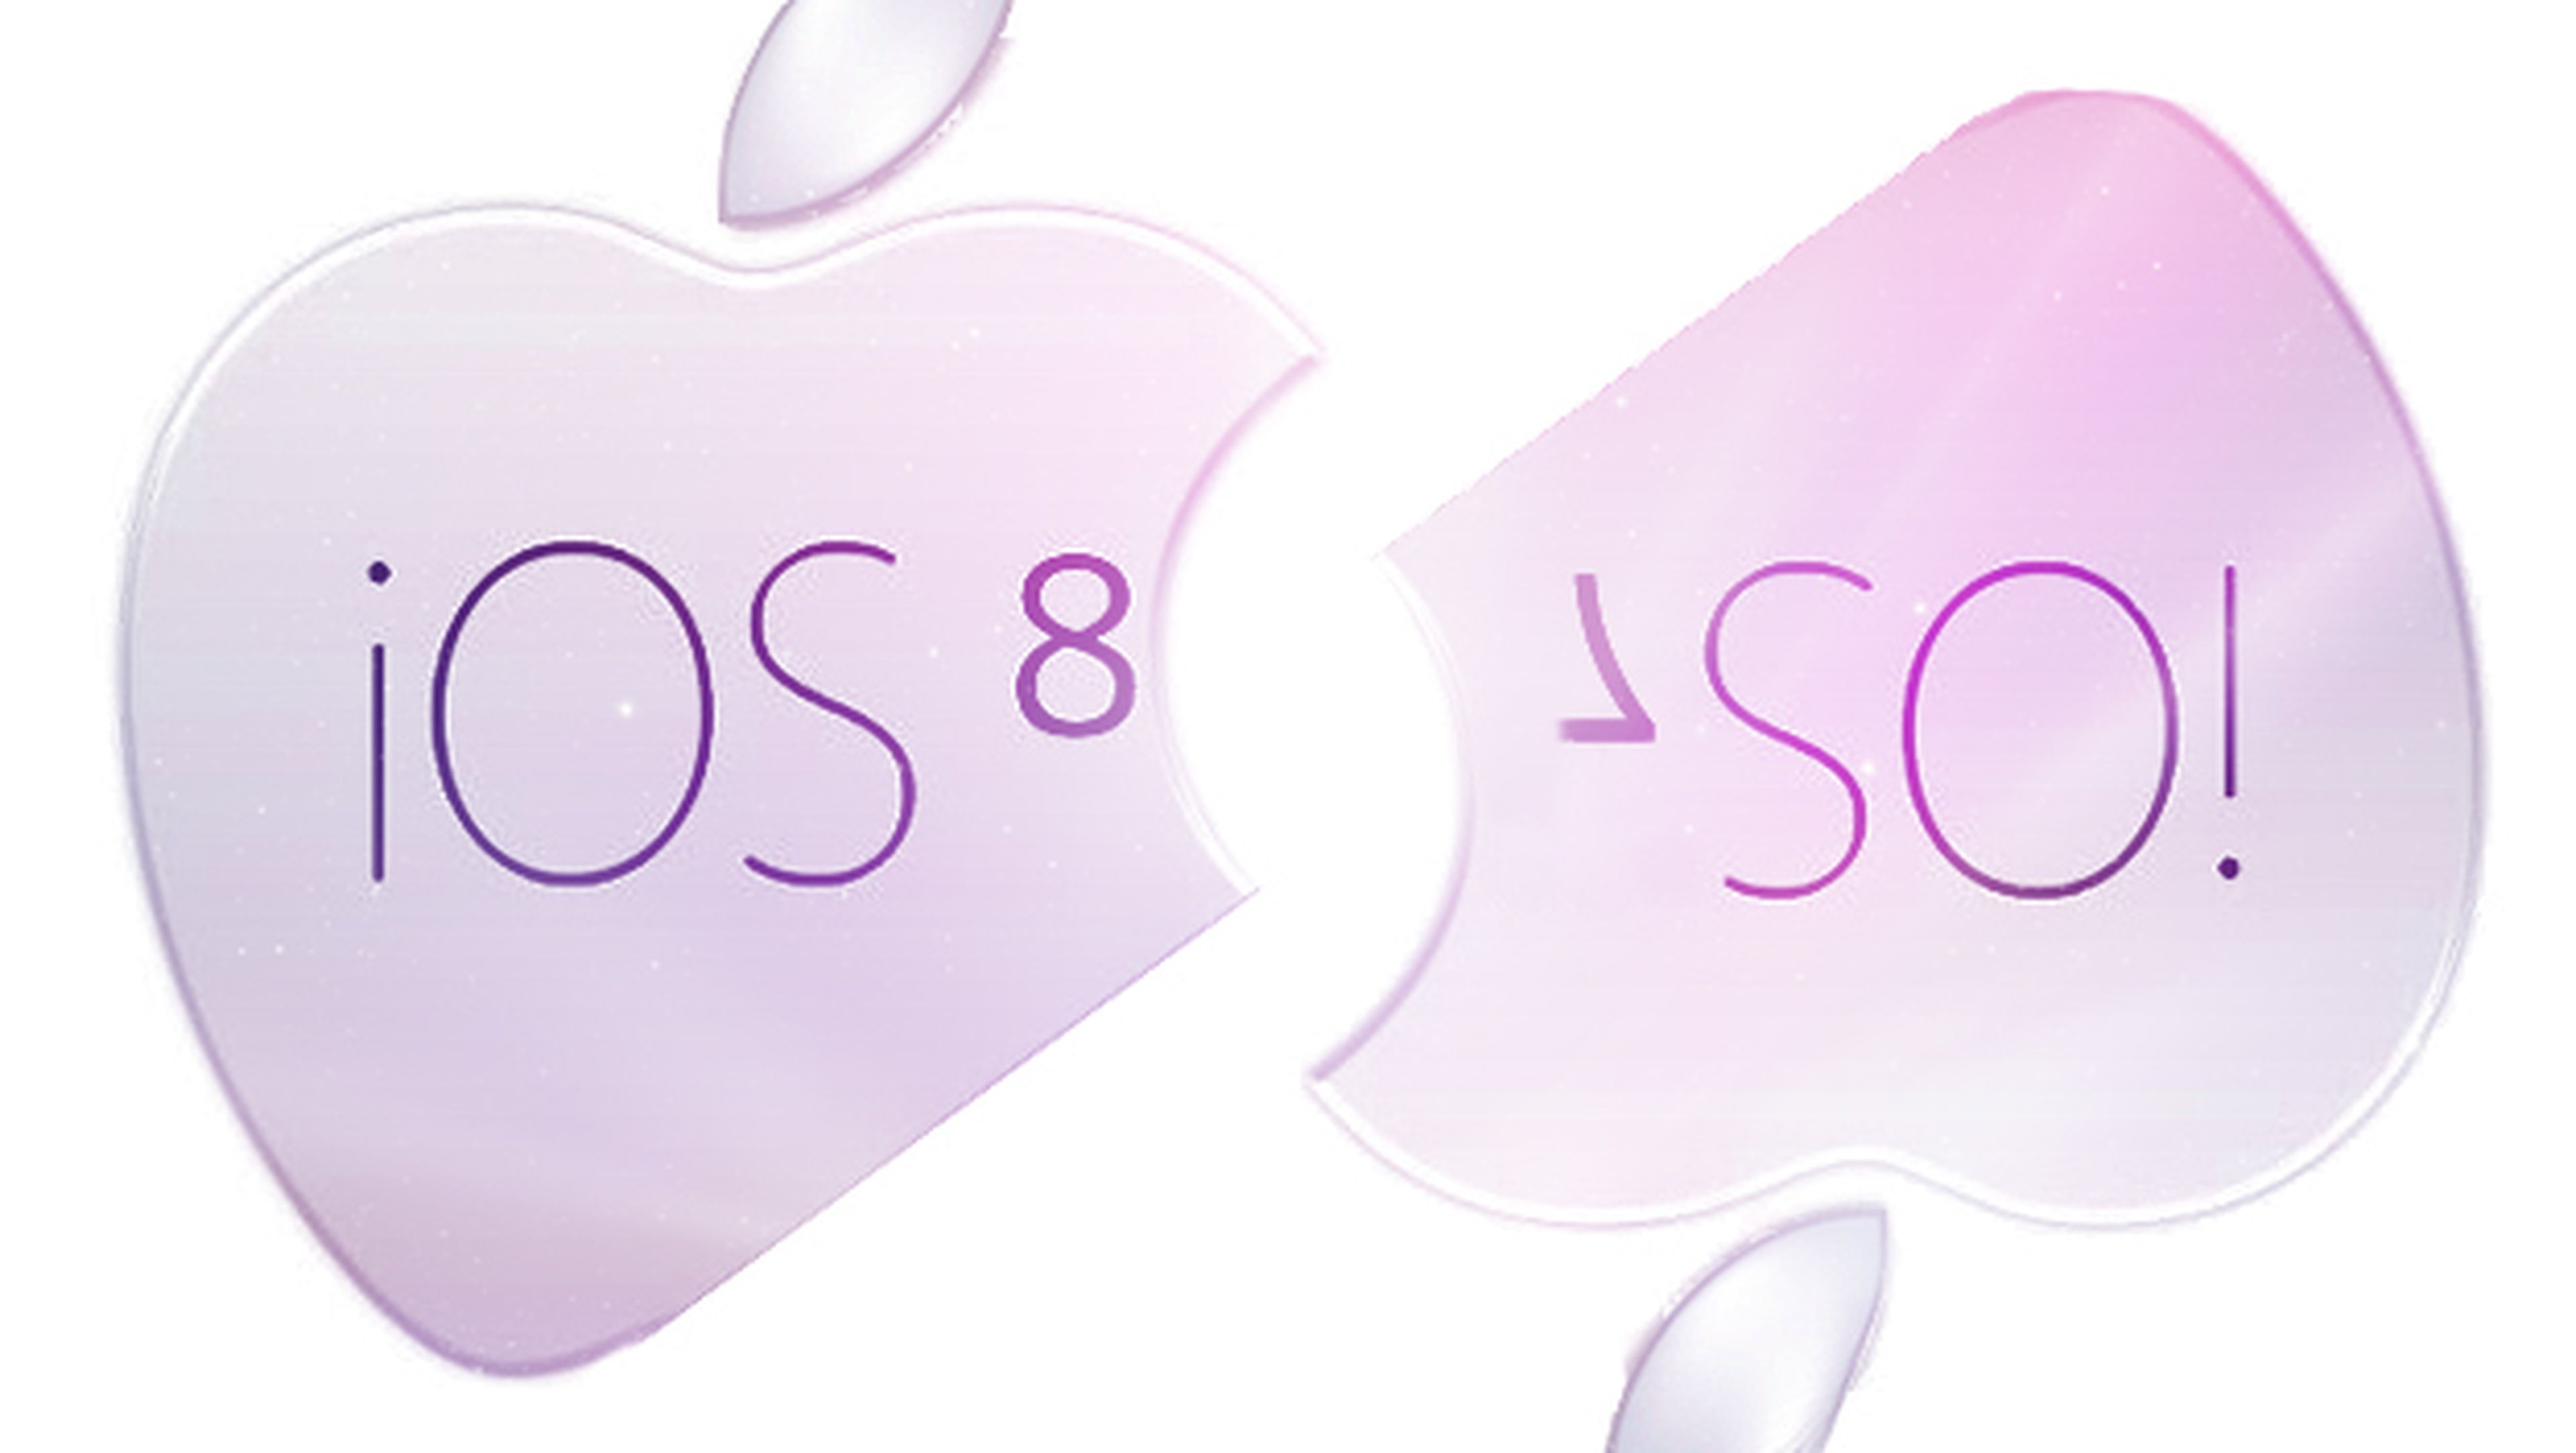 Aspectos de iOS 7 que Apple debería mejorar en iOS 8